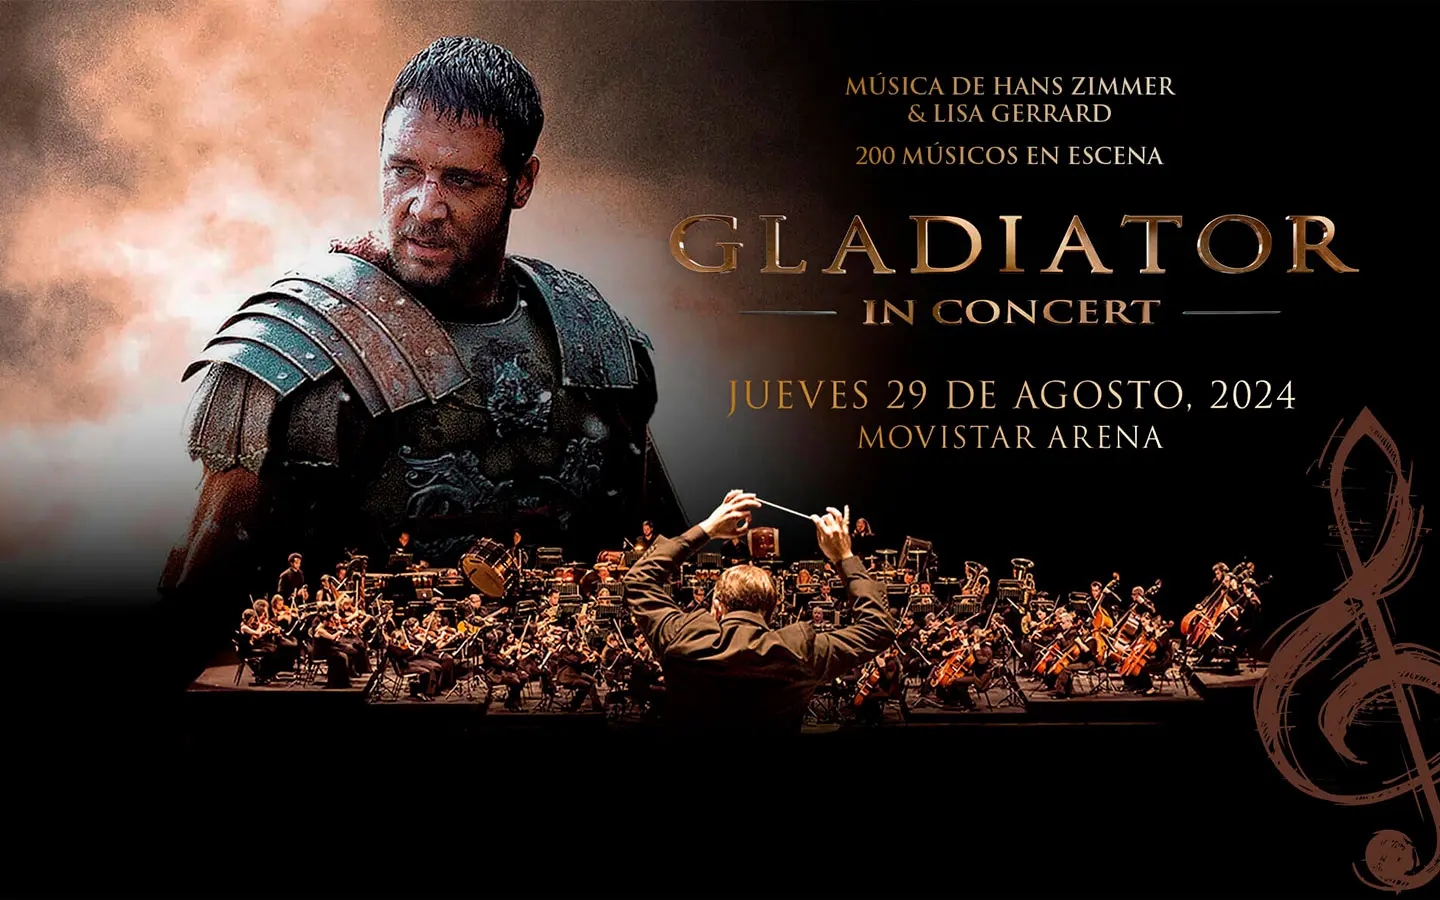 Gladiator In Concert única función en Chile promete una experiencia épica